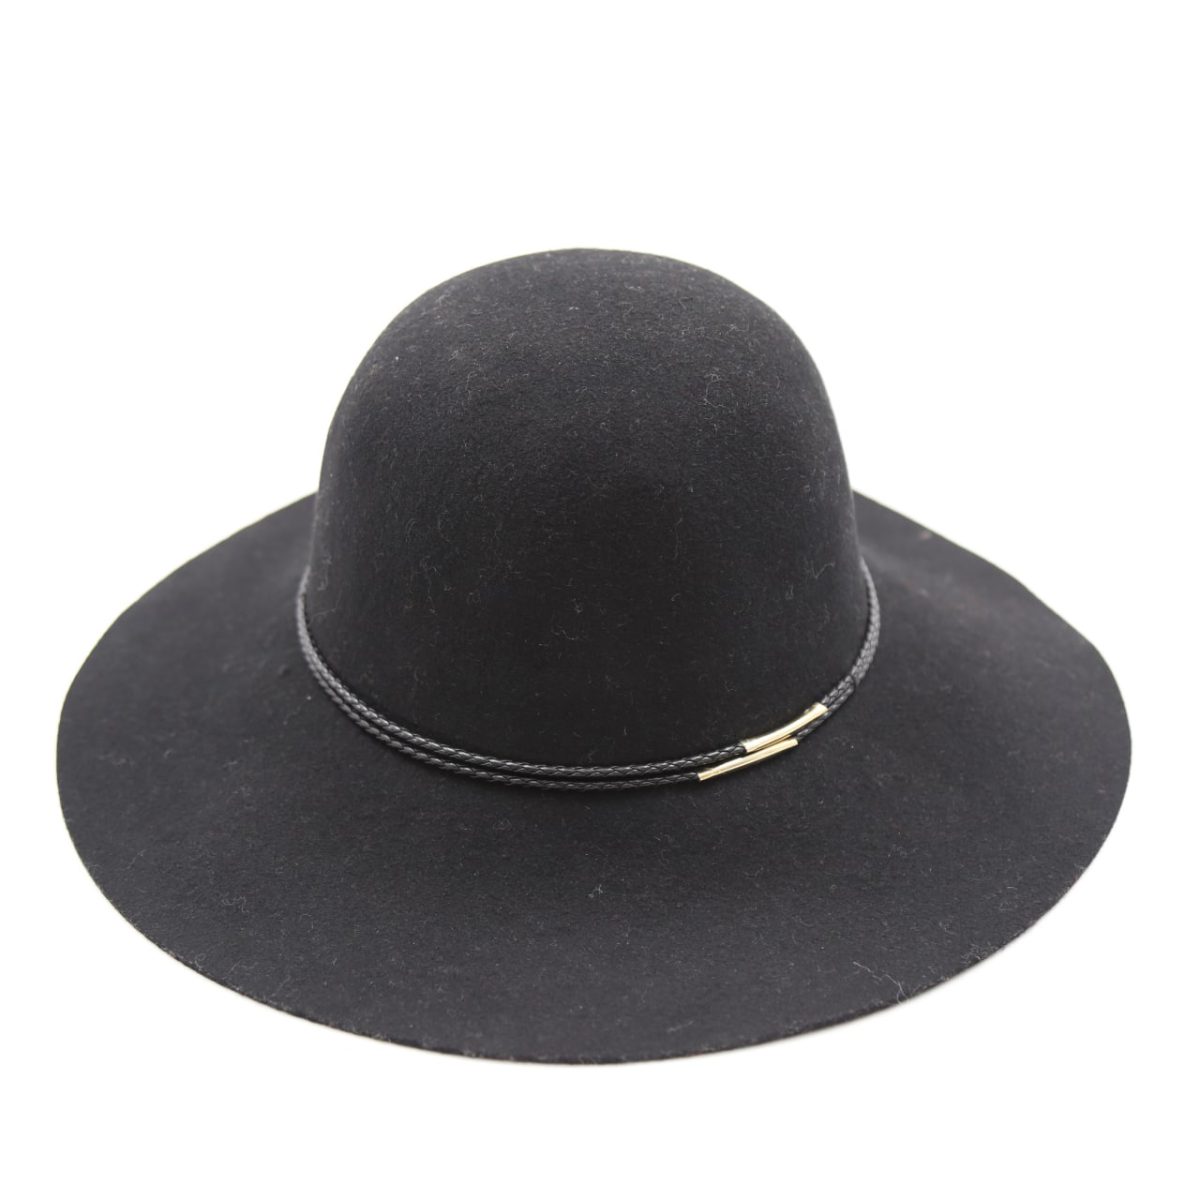 کلاه دخترانه لبه دار رنگ مشکی کلاسیک نمدی فلاپی لبه بلند بند چرمی قیطونی فلزدار